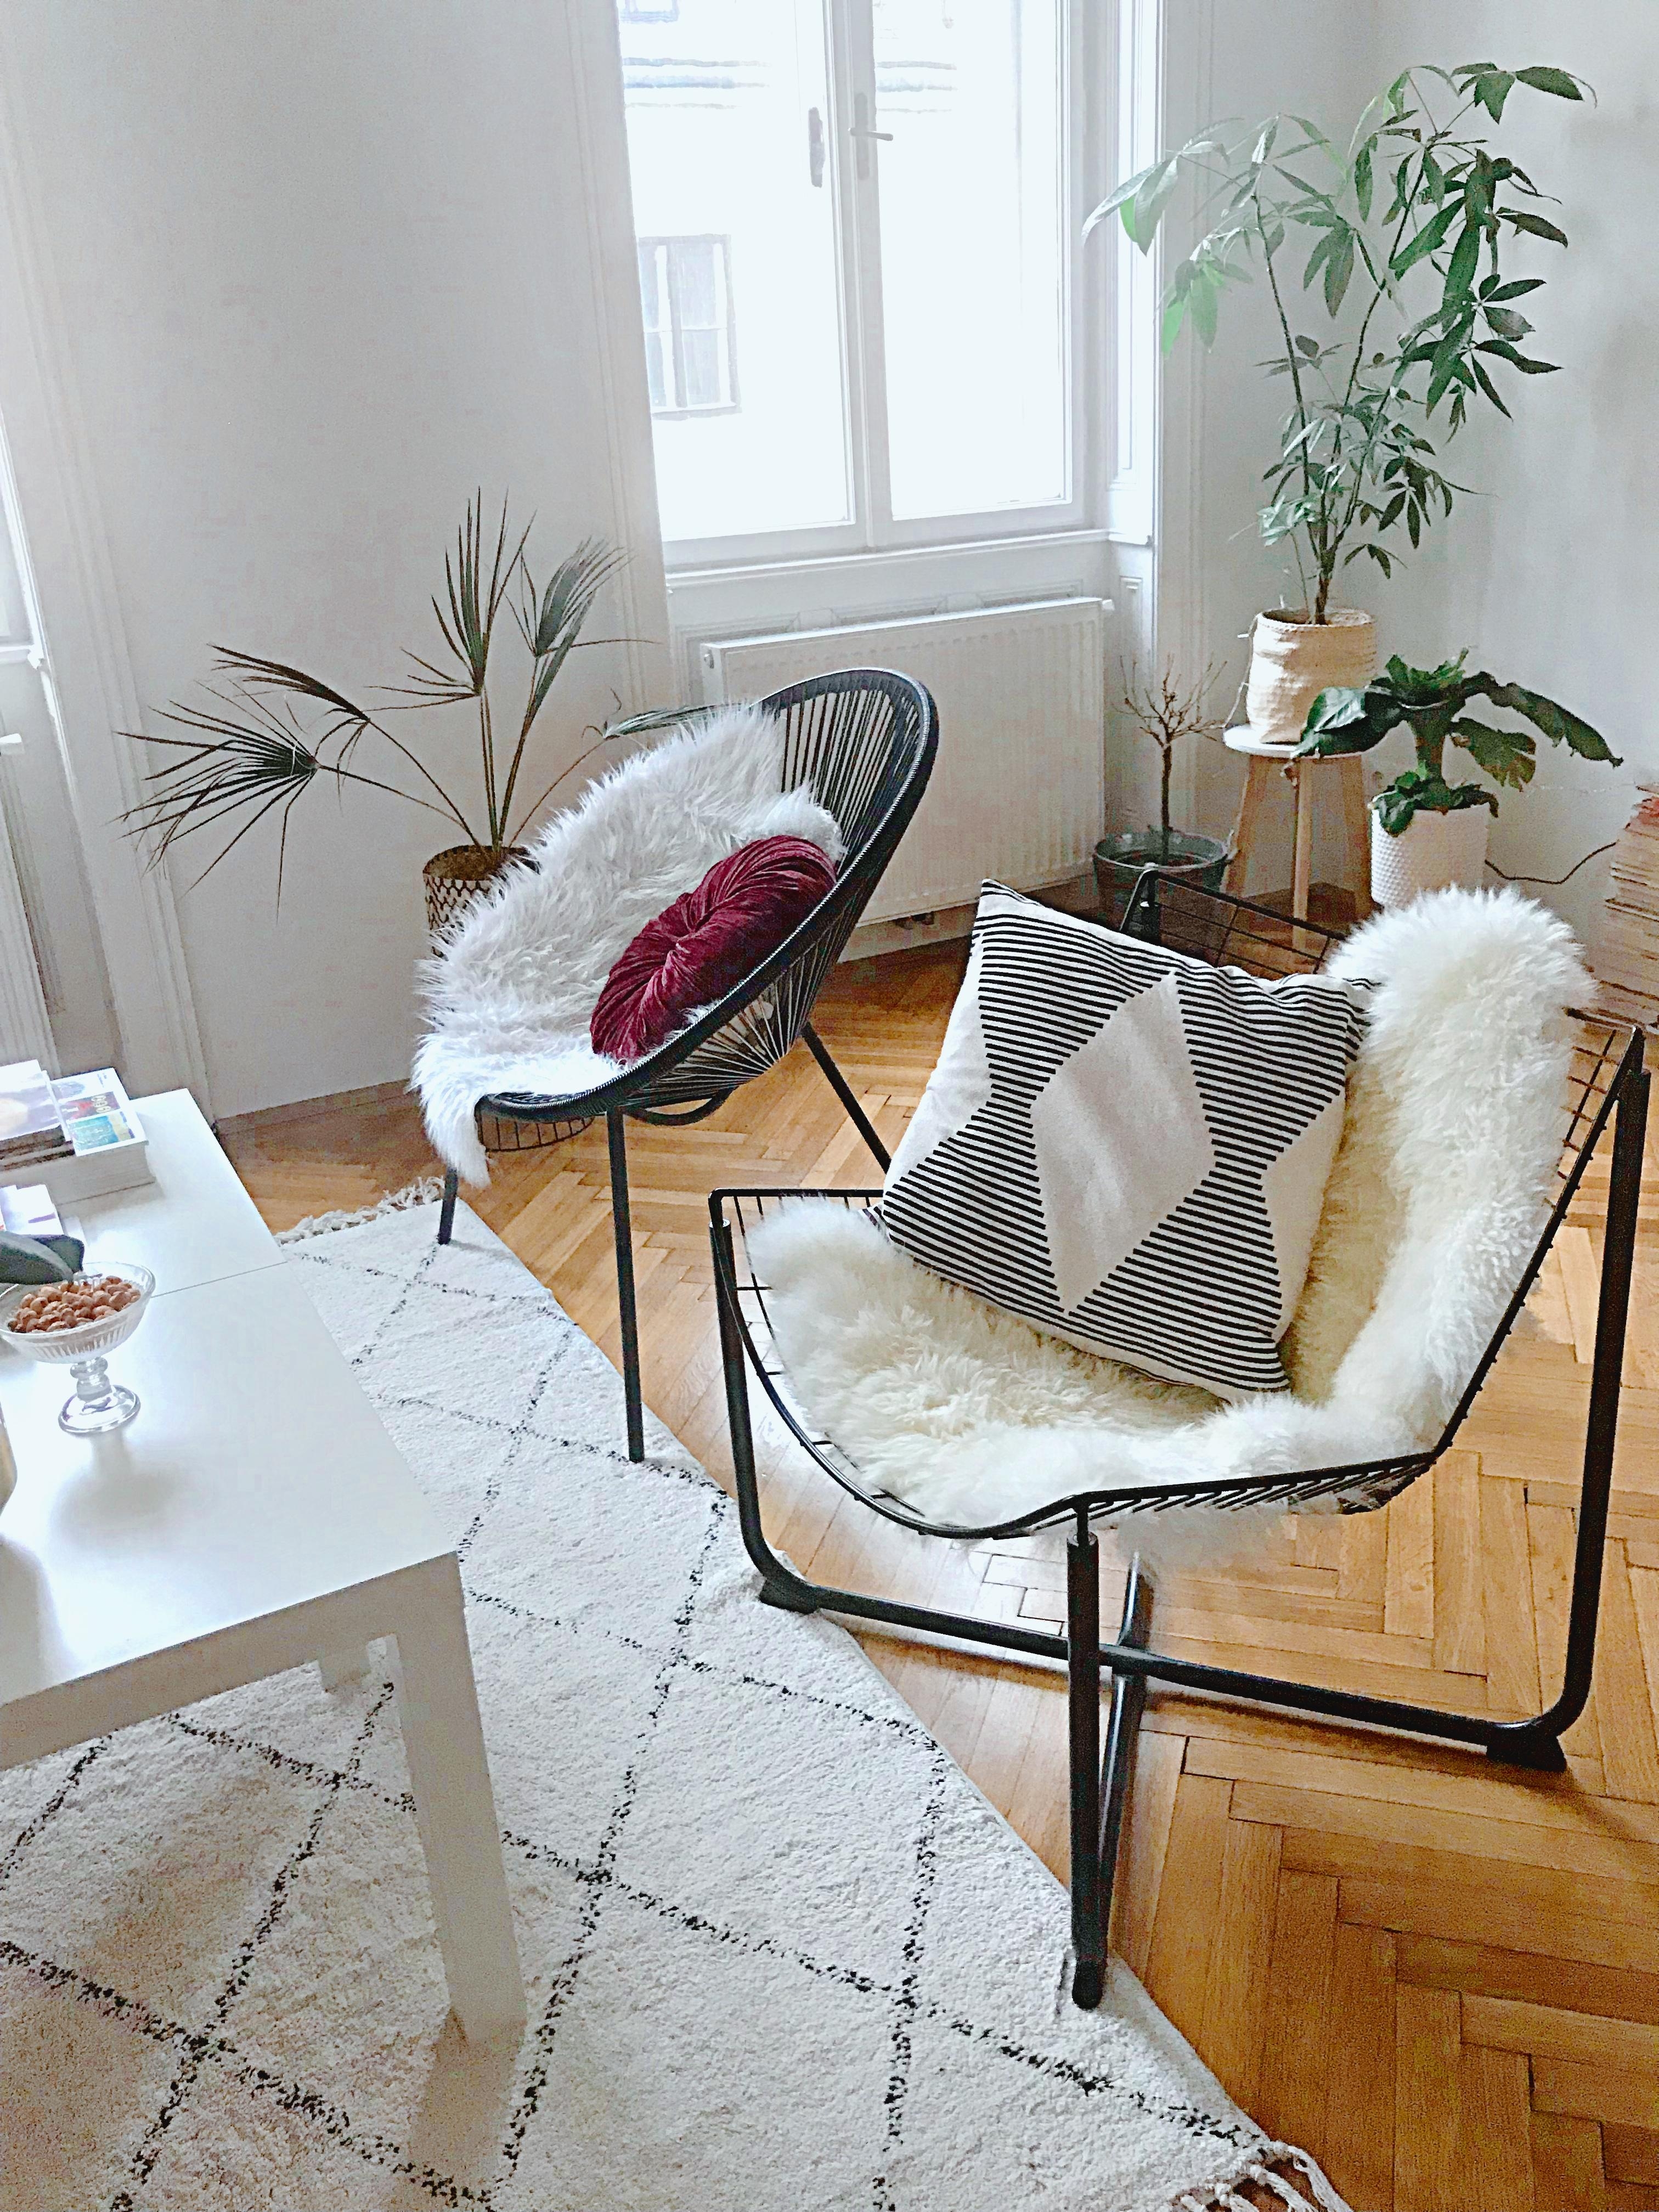 langsam wird es... ☺️ #wohnzimmer #livingroom #ikea #plants #newflat #minimalistic 